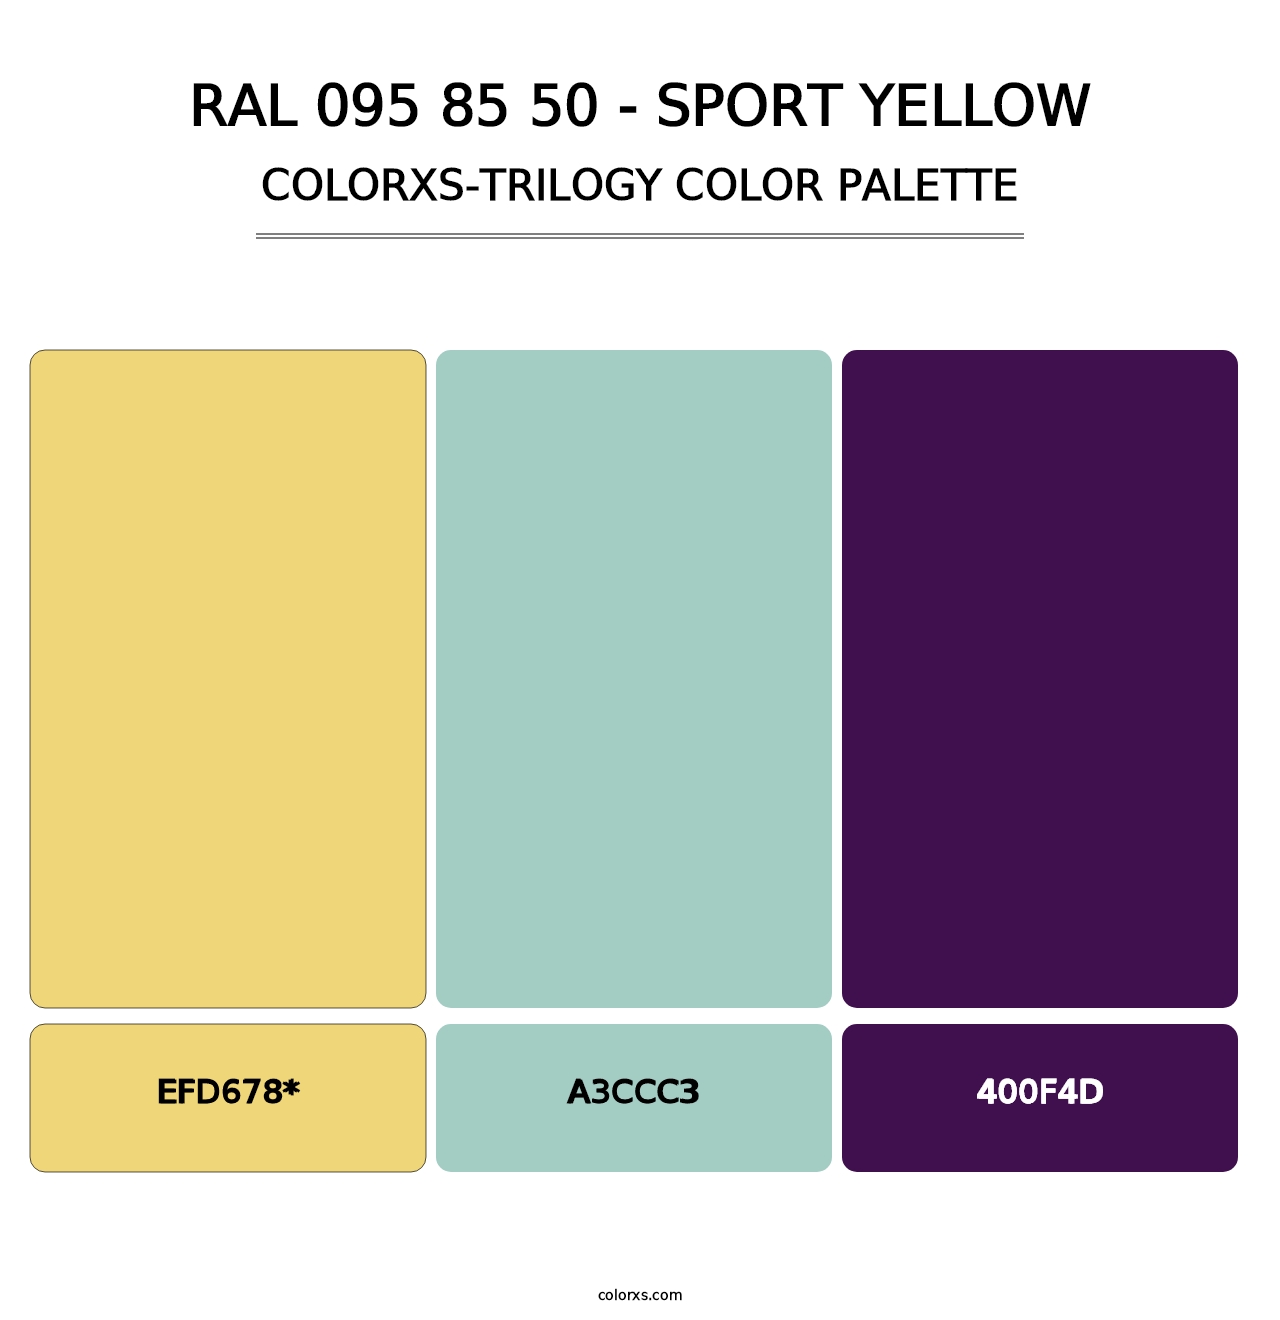 RAL 095 85 50 - Sport Yellow - Colorxs Trilogy Palette